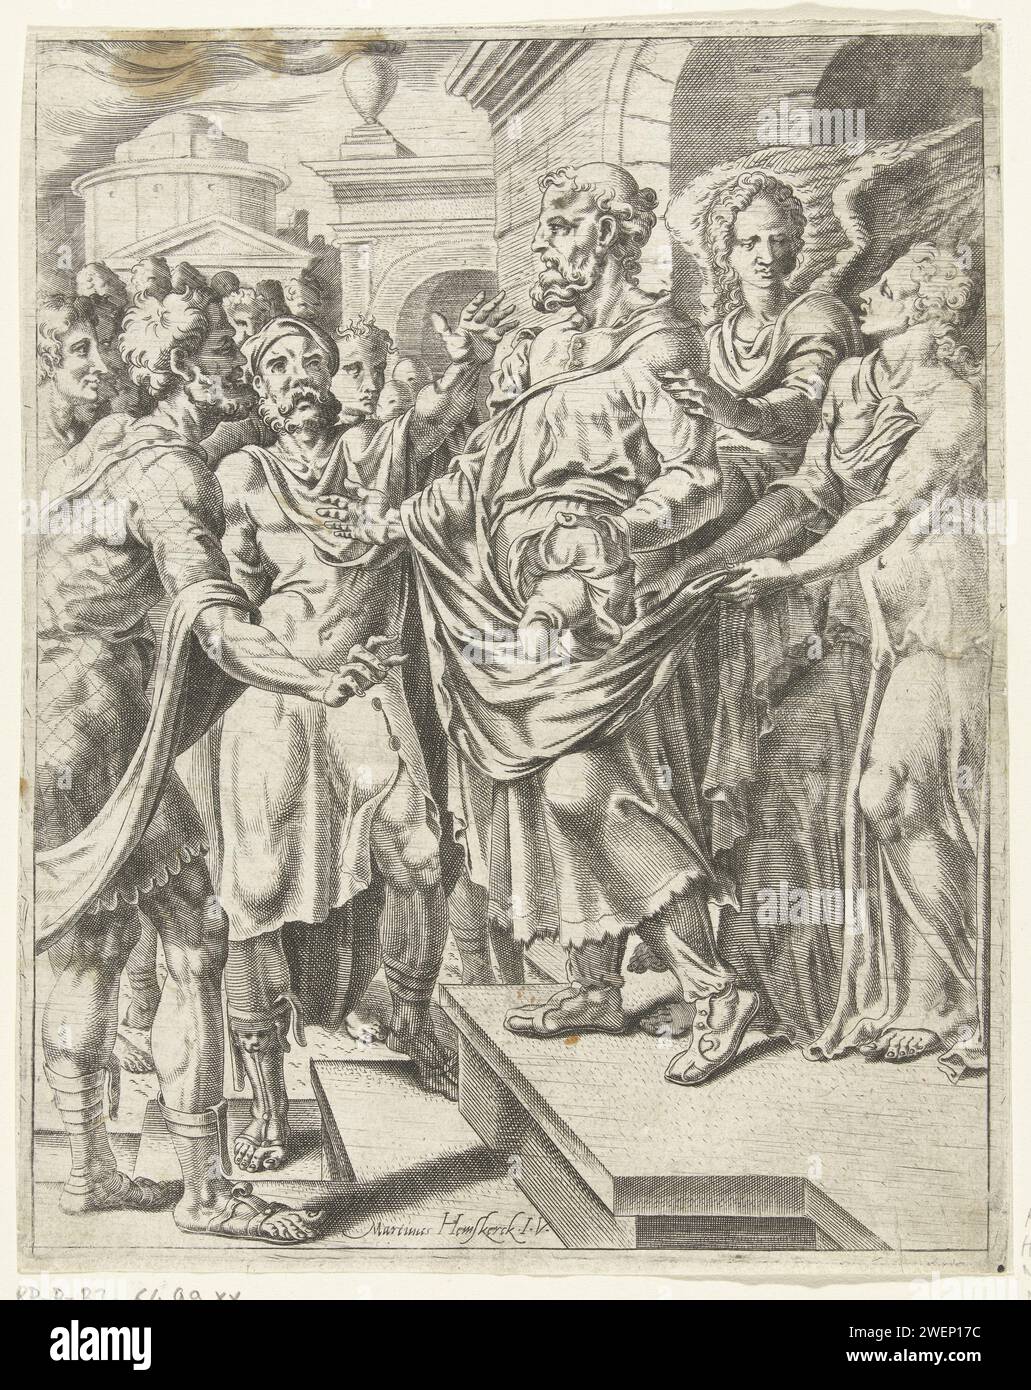 Deux anges entrent dans la maison, Cornelis Bos, après Maarten van Heemskerck, vers 1551 imprimer les hommes de Sodome veulent que Lot extrait les deux étrangers, mais Lot se lève pour eux. Les deux anges entrent dans la maison et le protègent devant la foule furieuse. Papier gravé les deux anges interviennent et frappent la foule qui entoure la maison de Lot avec aveuglement Banque D'Images